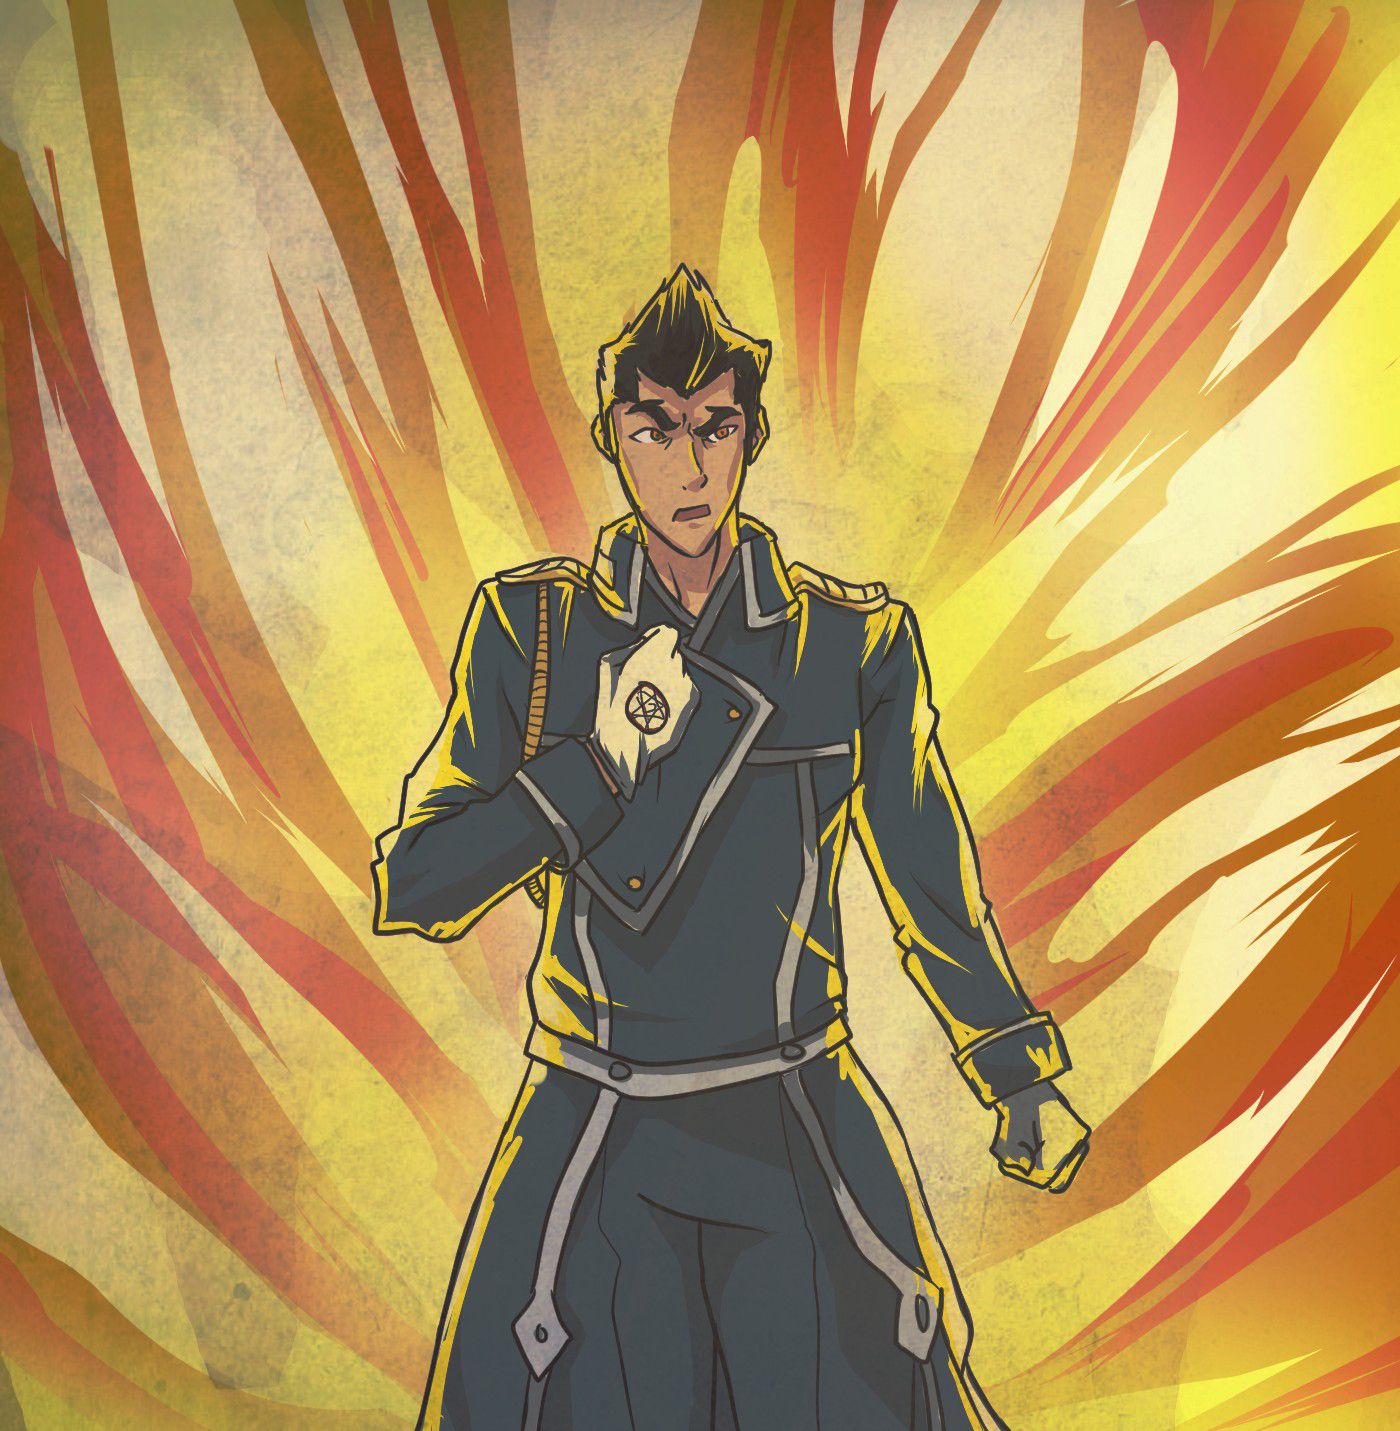 artist-omako Avatar Legend of Korra Fullmetal Alchemist Brotherhood